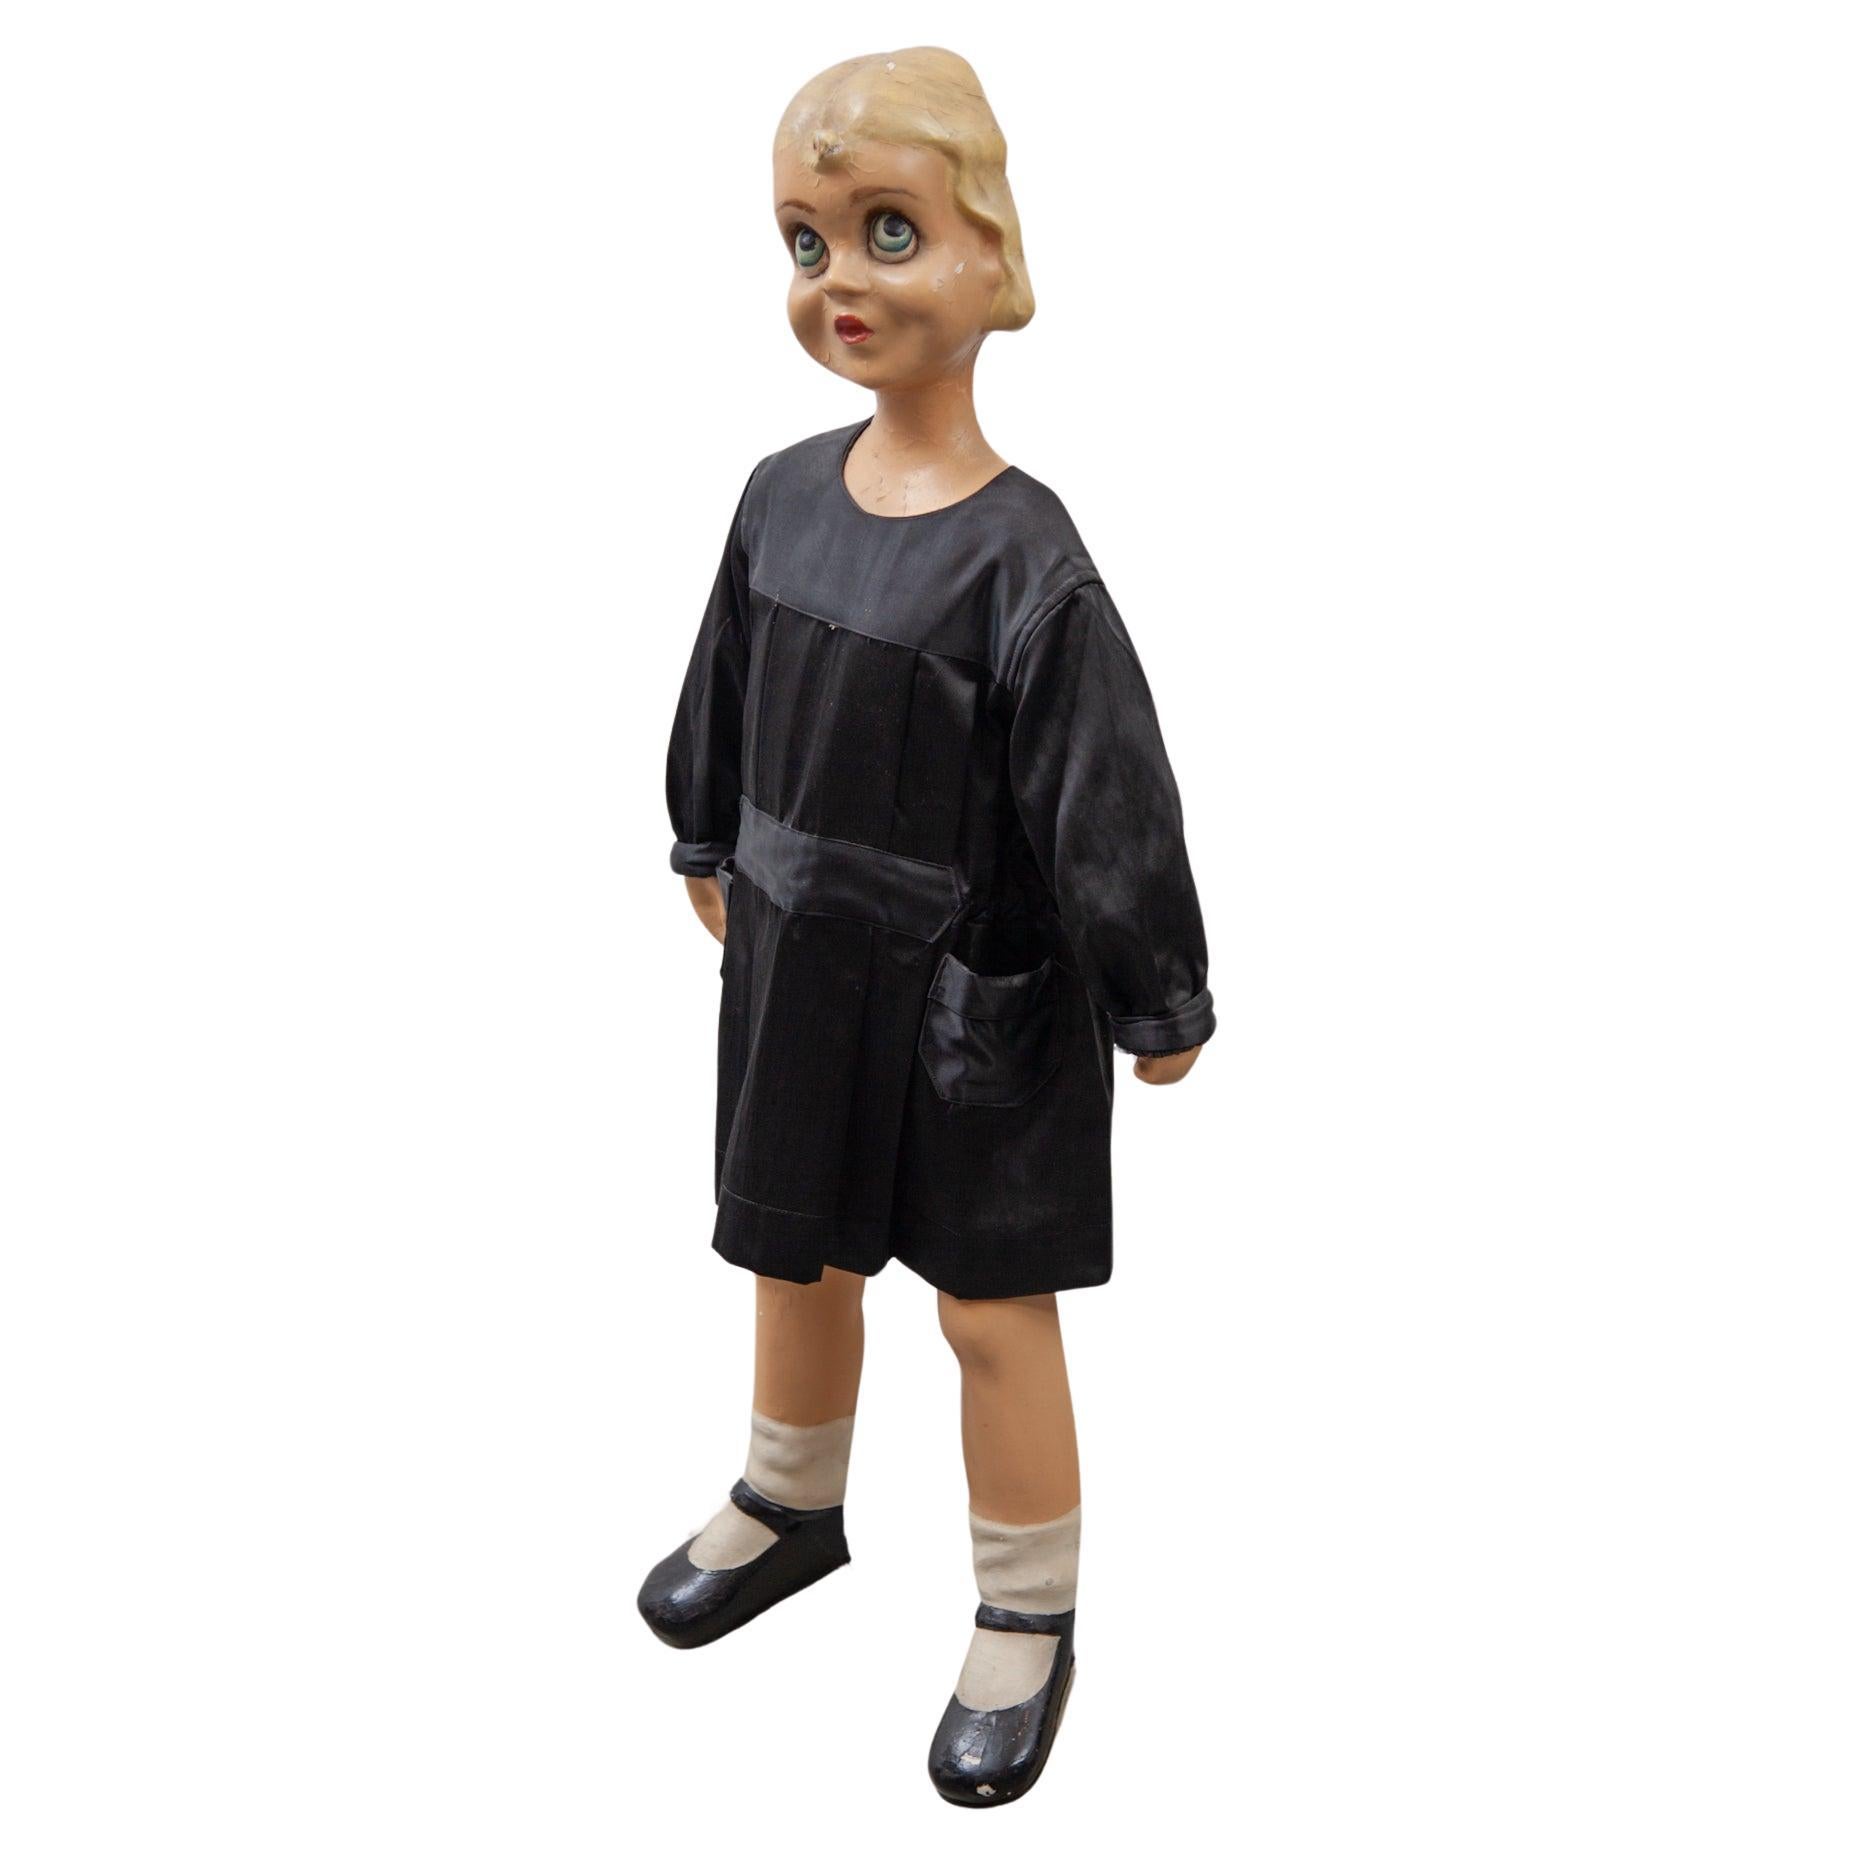 Mannequin eines jungen Mädchens in schwarzem Kleid, Shop Display, 1950er Jahre